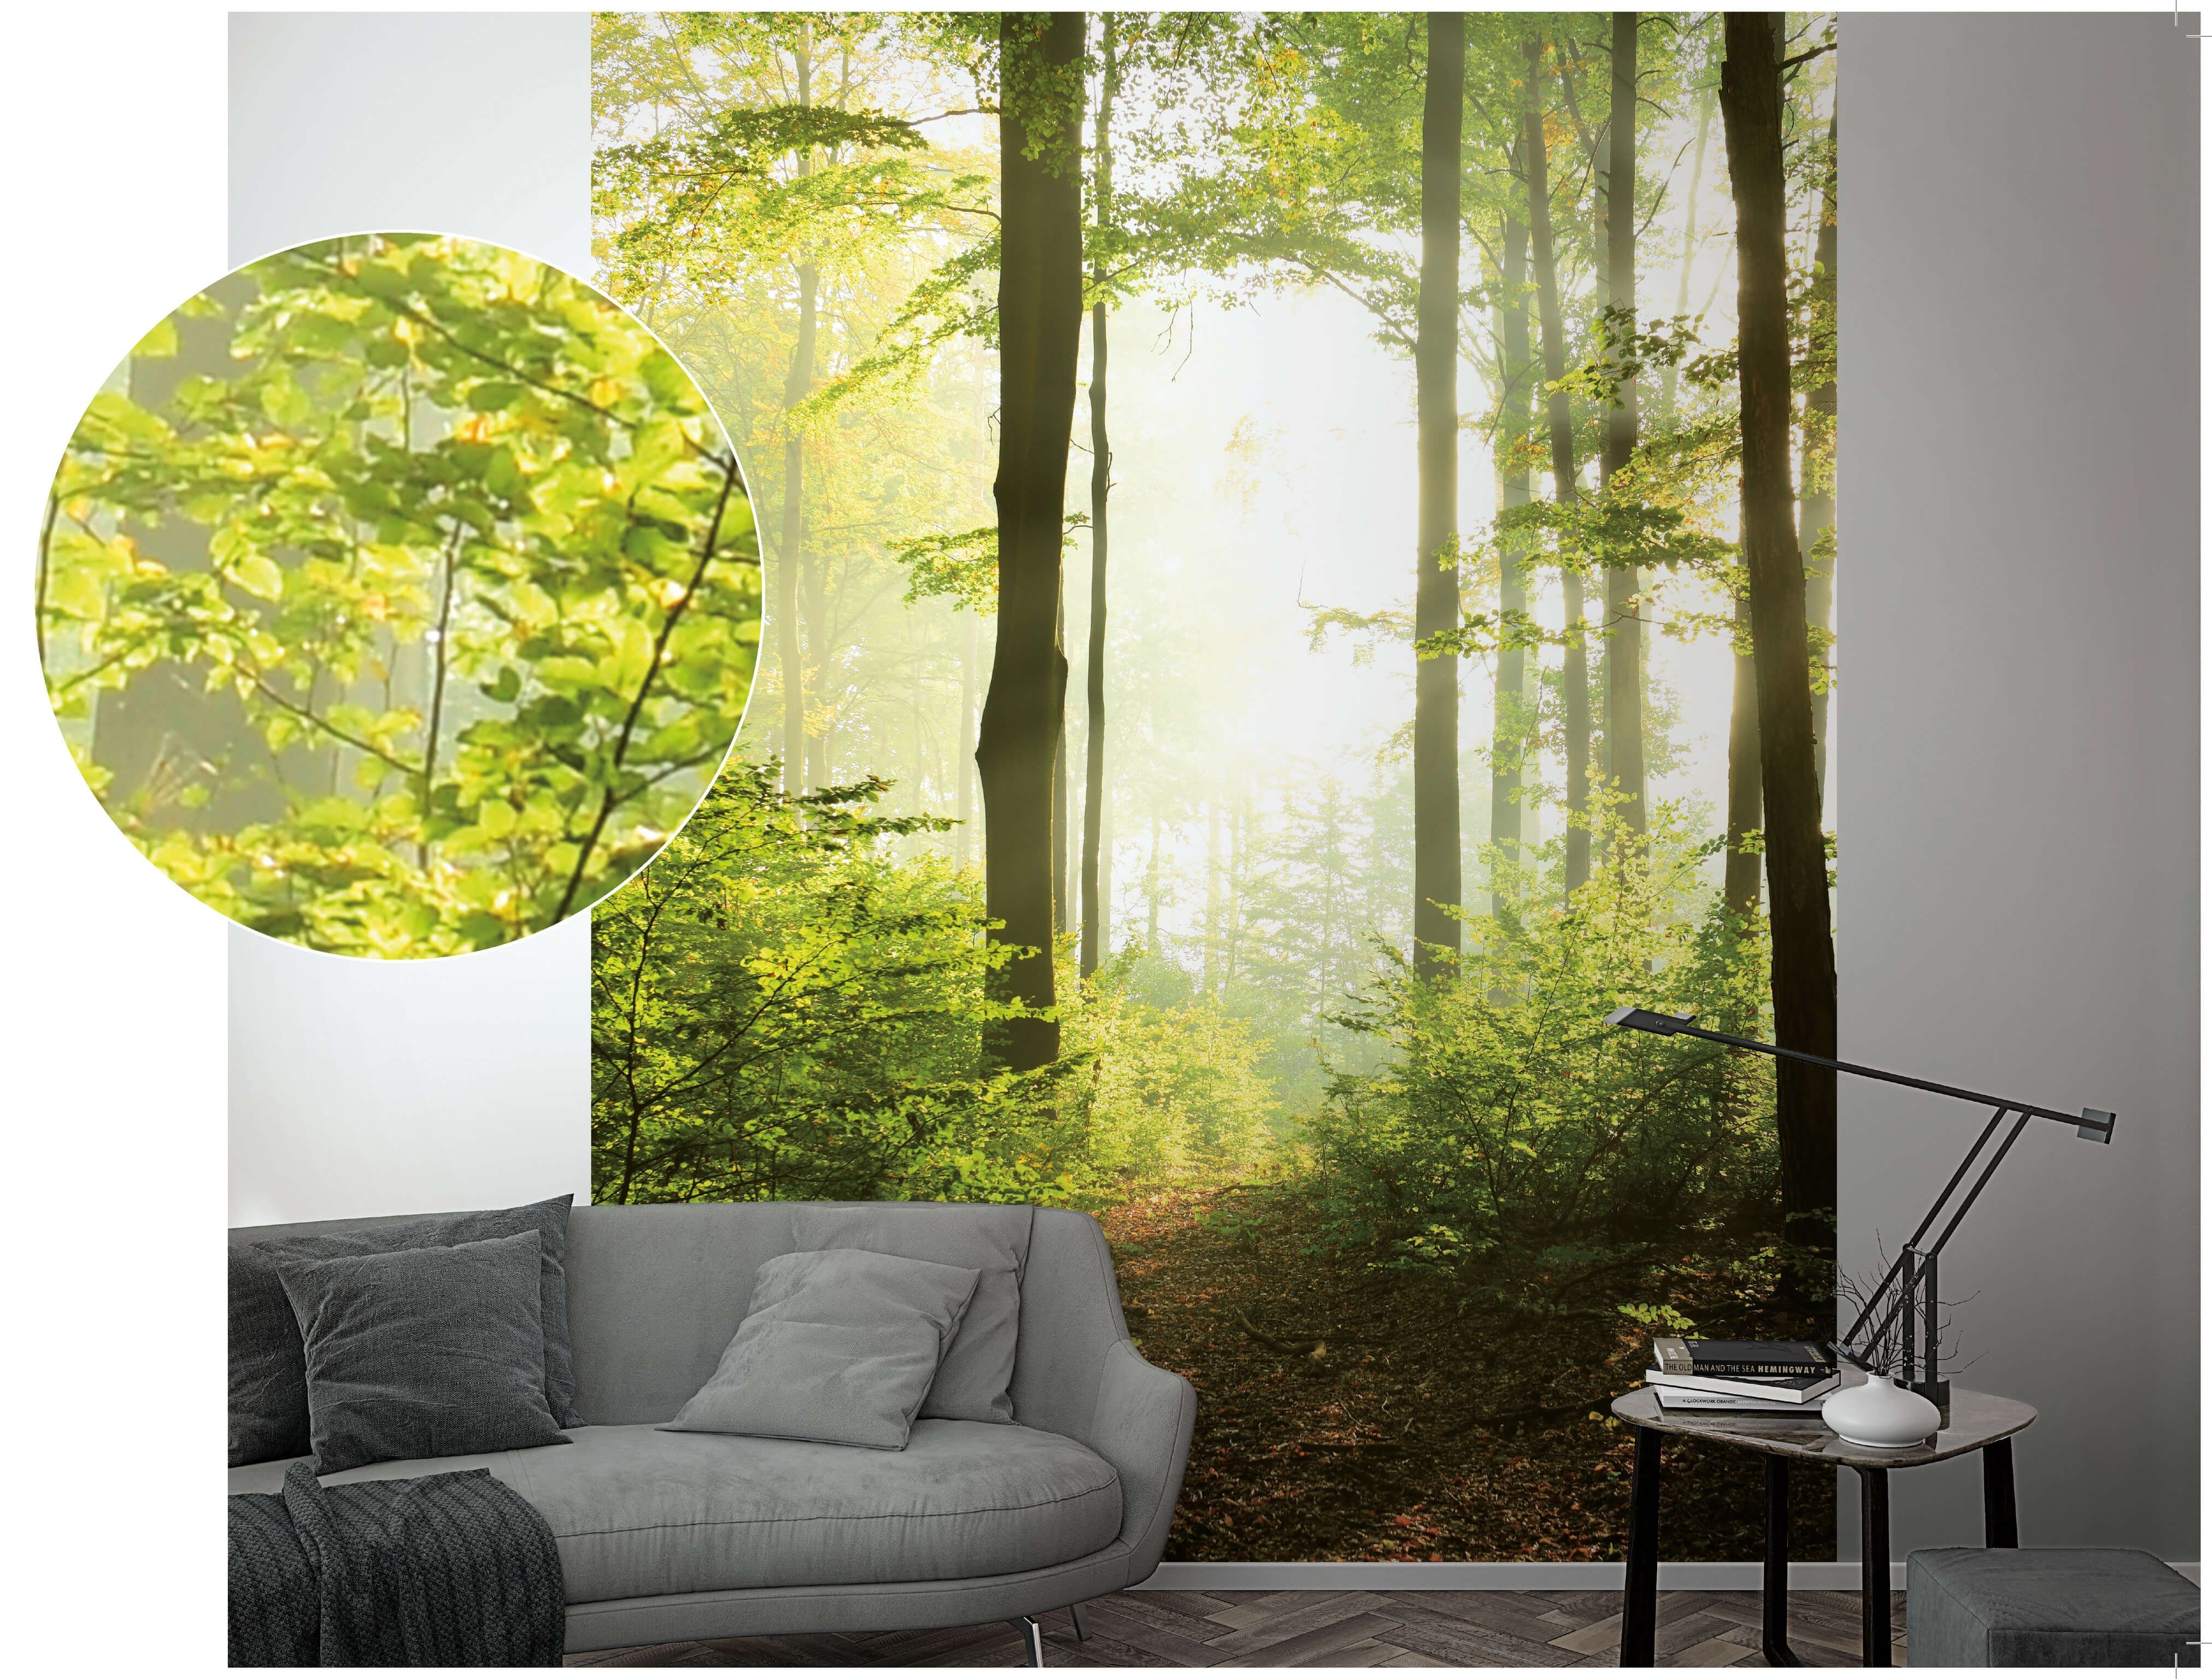 Newroom Vliestapete, [ 2,7 x 2,12m ] großzügiges Motiv - kein wiederkehrendes Muster - nahtlos große Flächen möglich - Fototapete Wandbild Wald Baum Licht Made in Germany